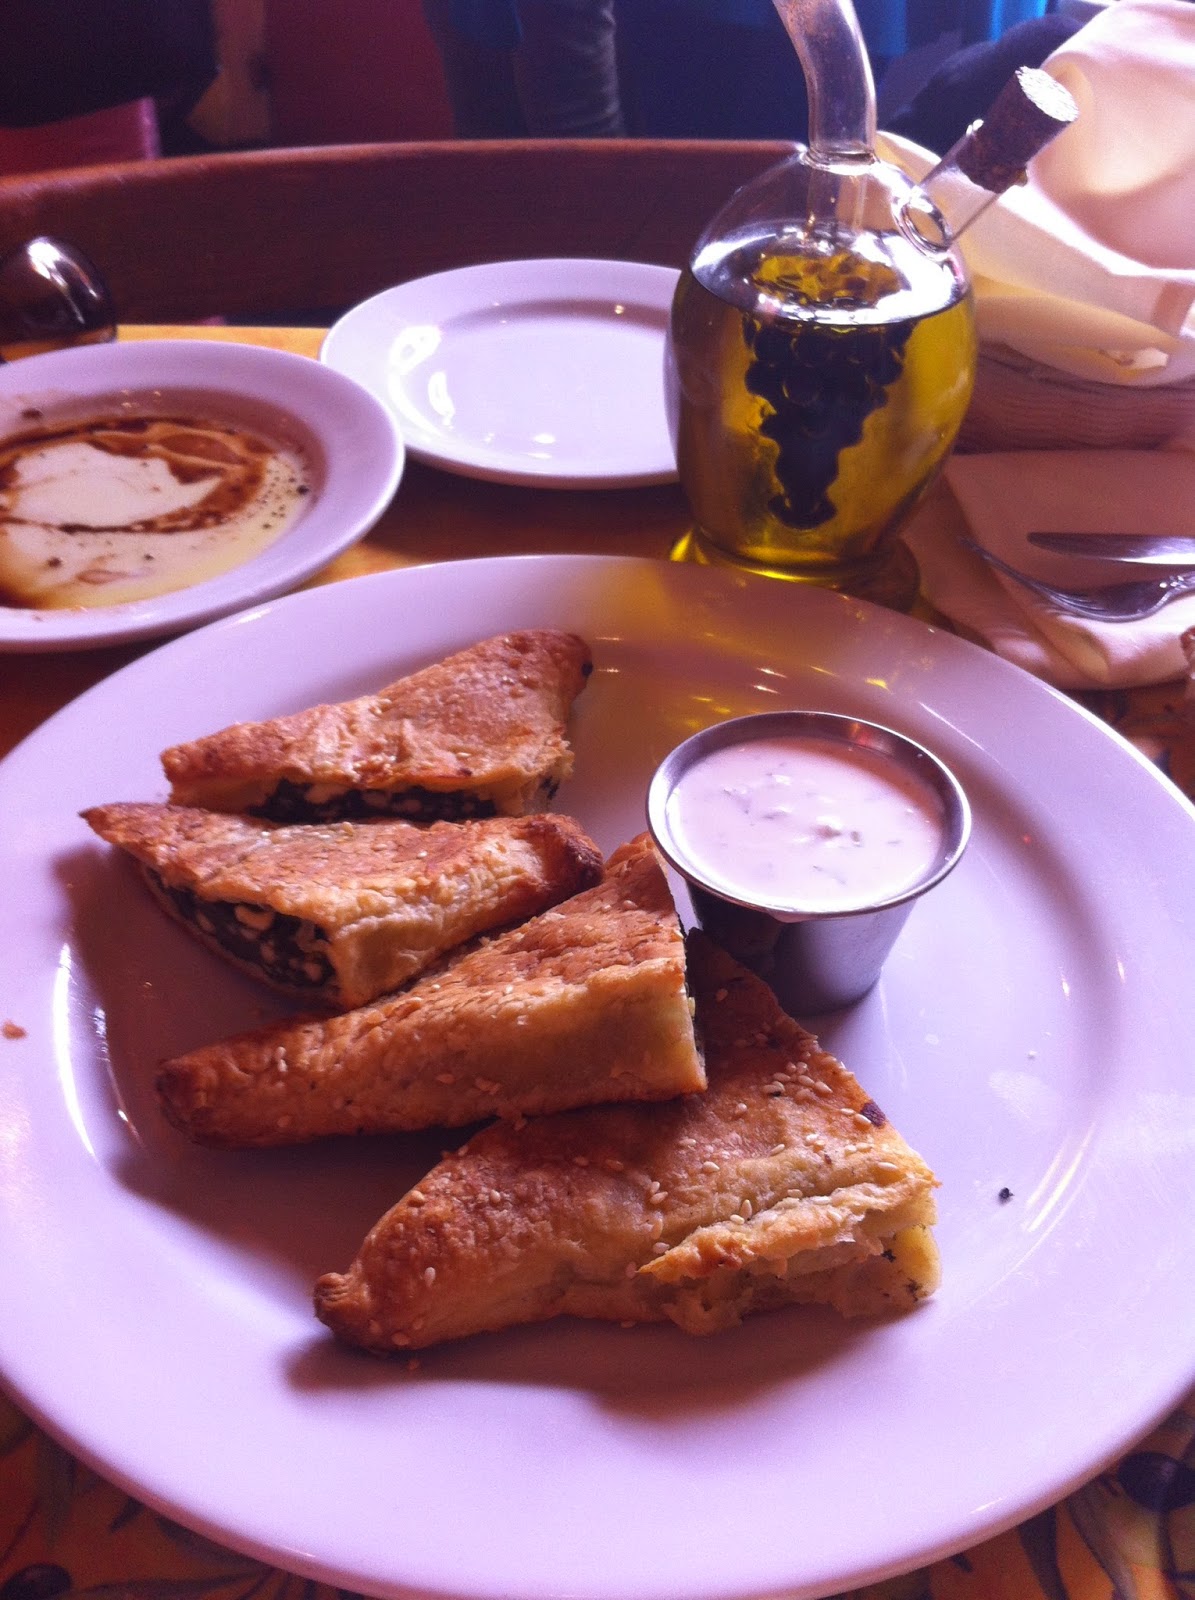 Greek spanakopita at Dametra Cafe